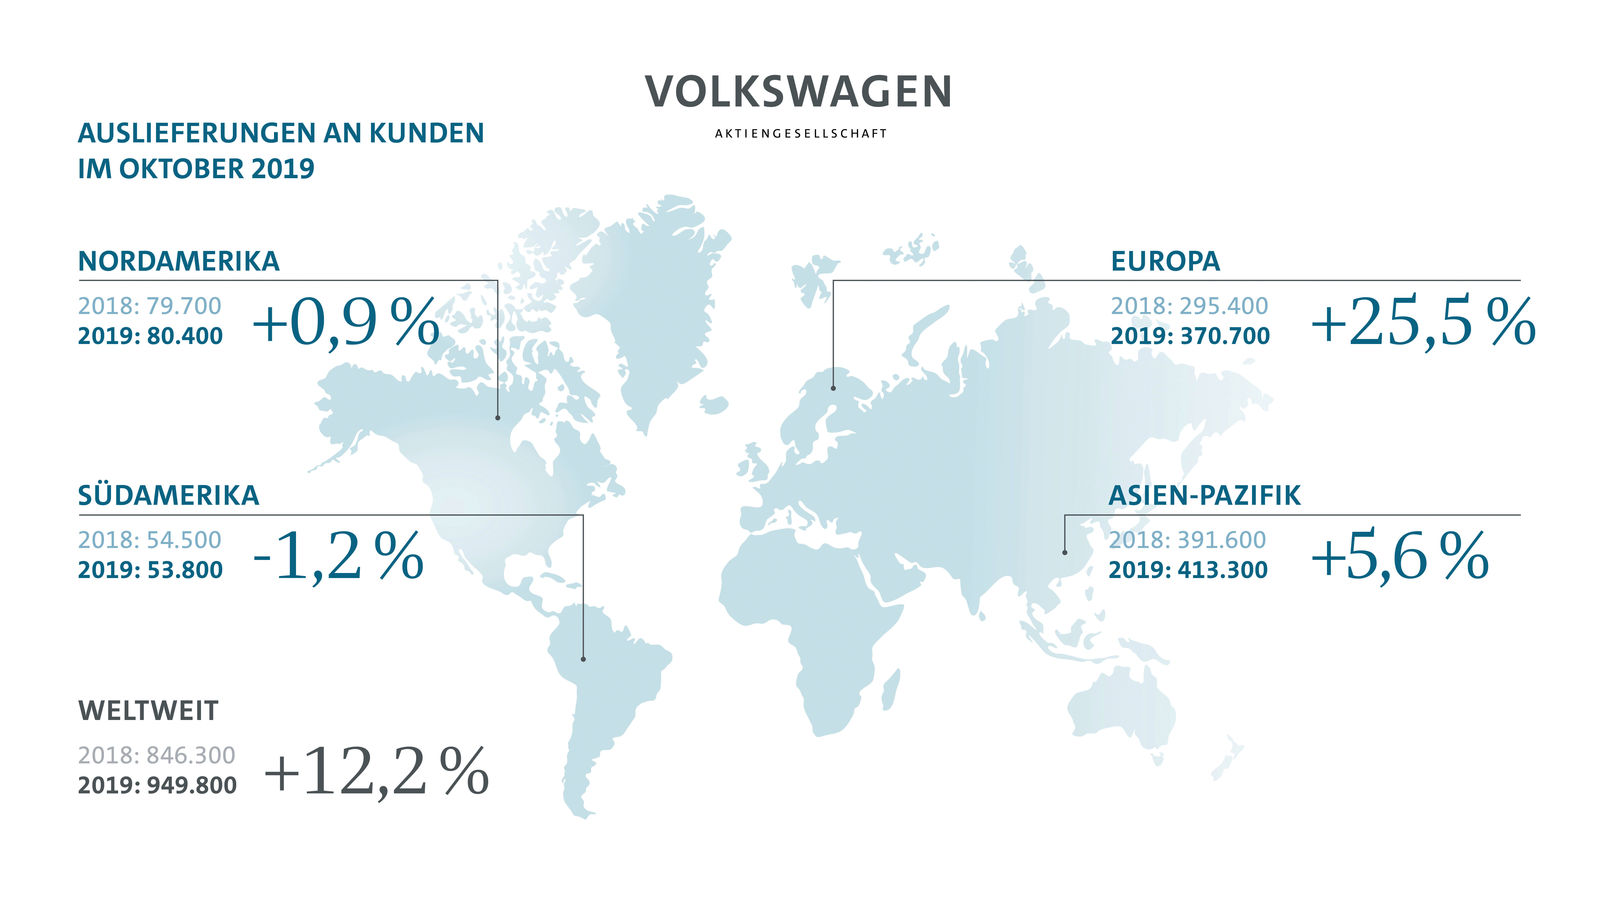 Volkswagen Konzern mit starken Auslieferungen  im Oktober